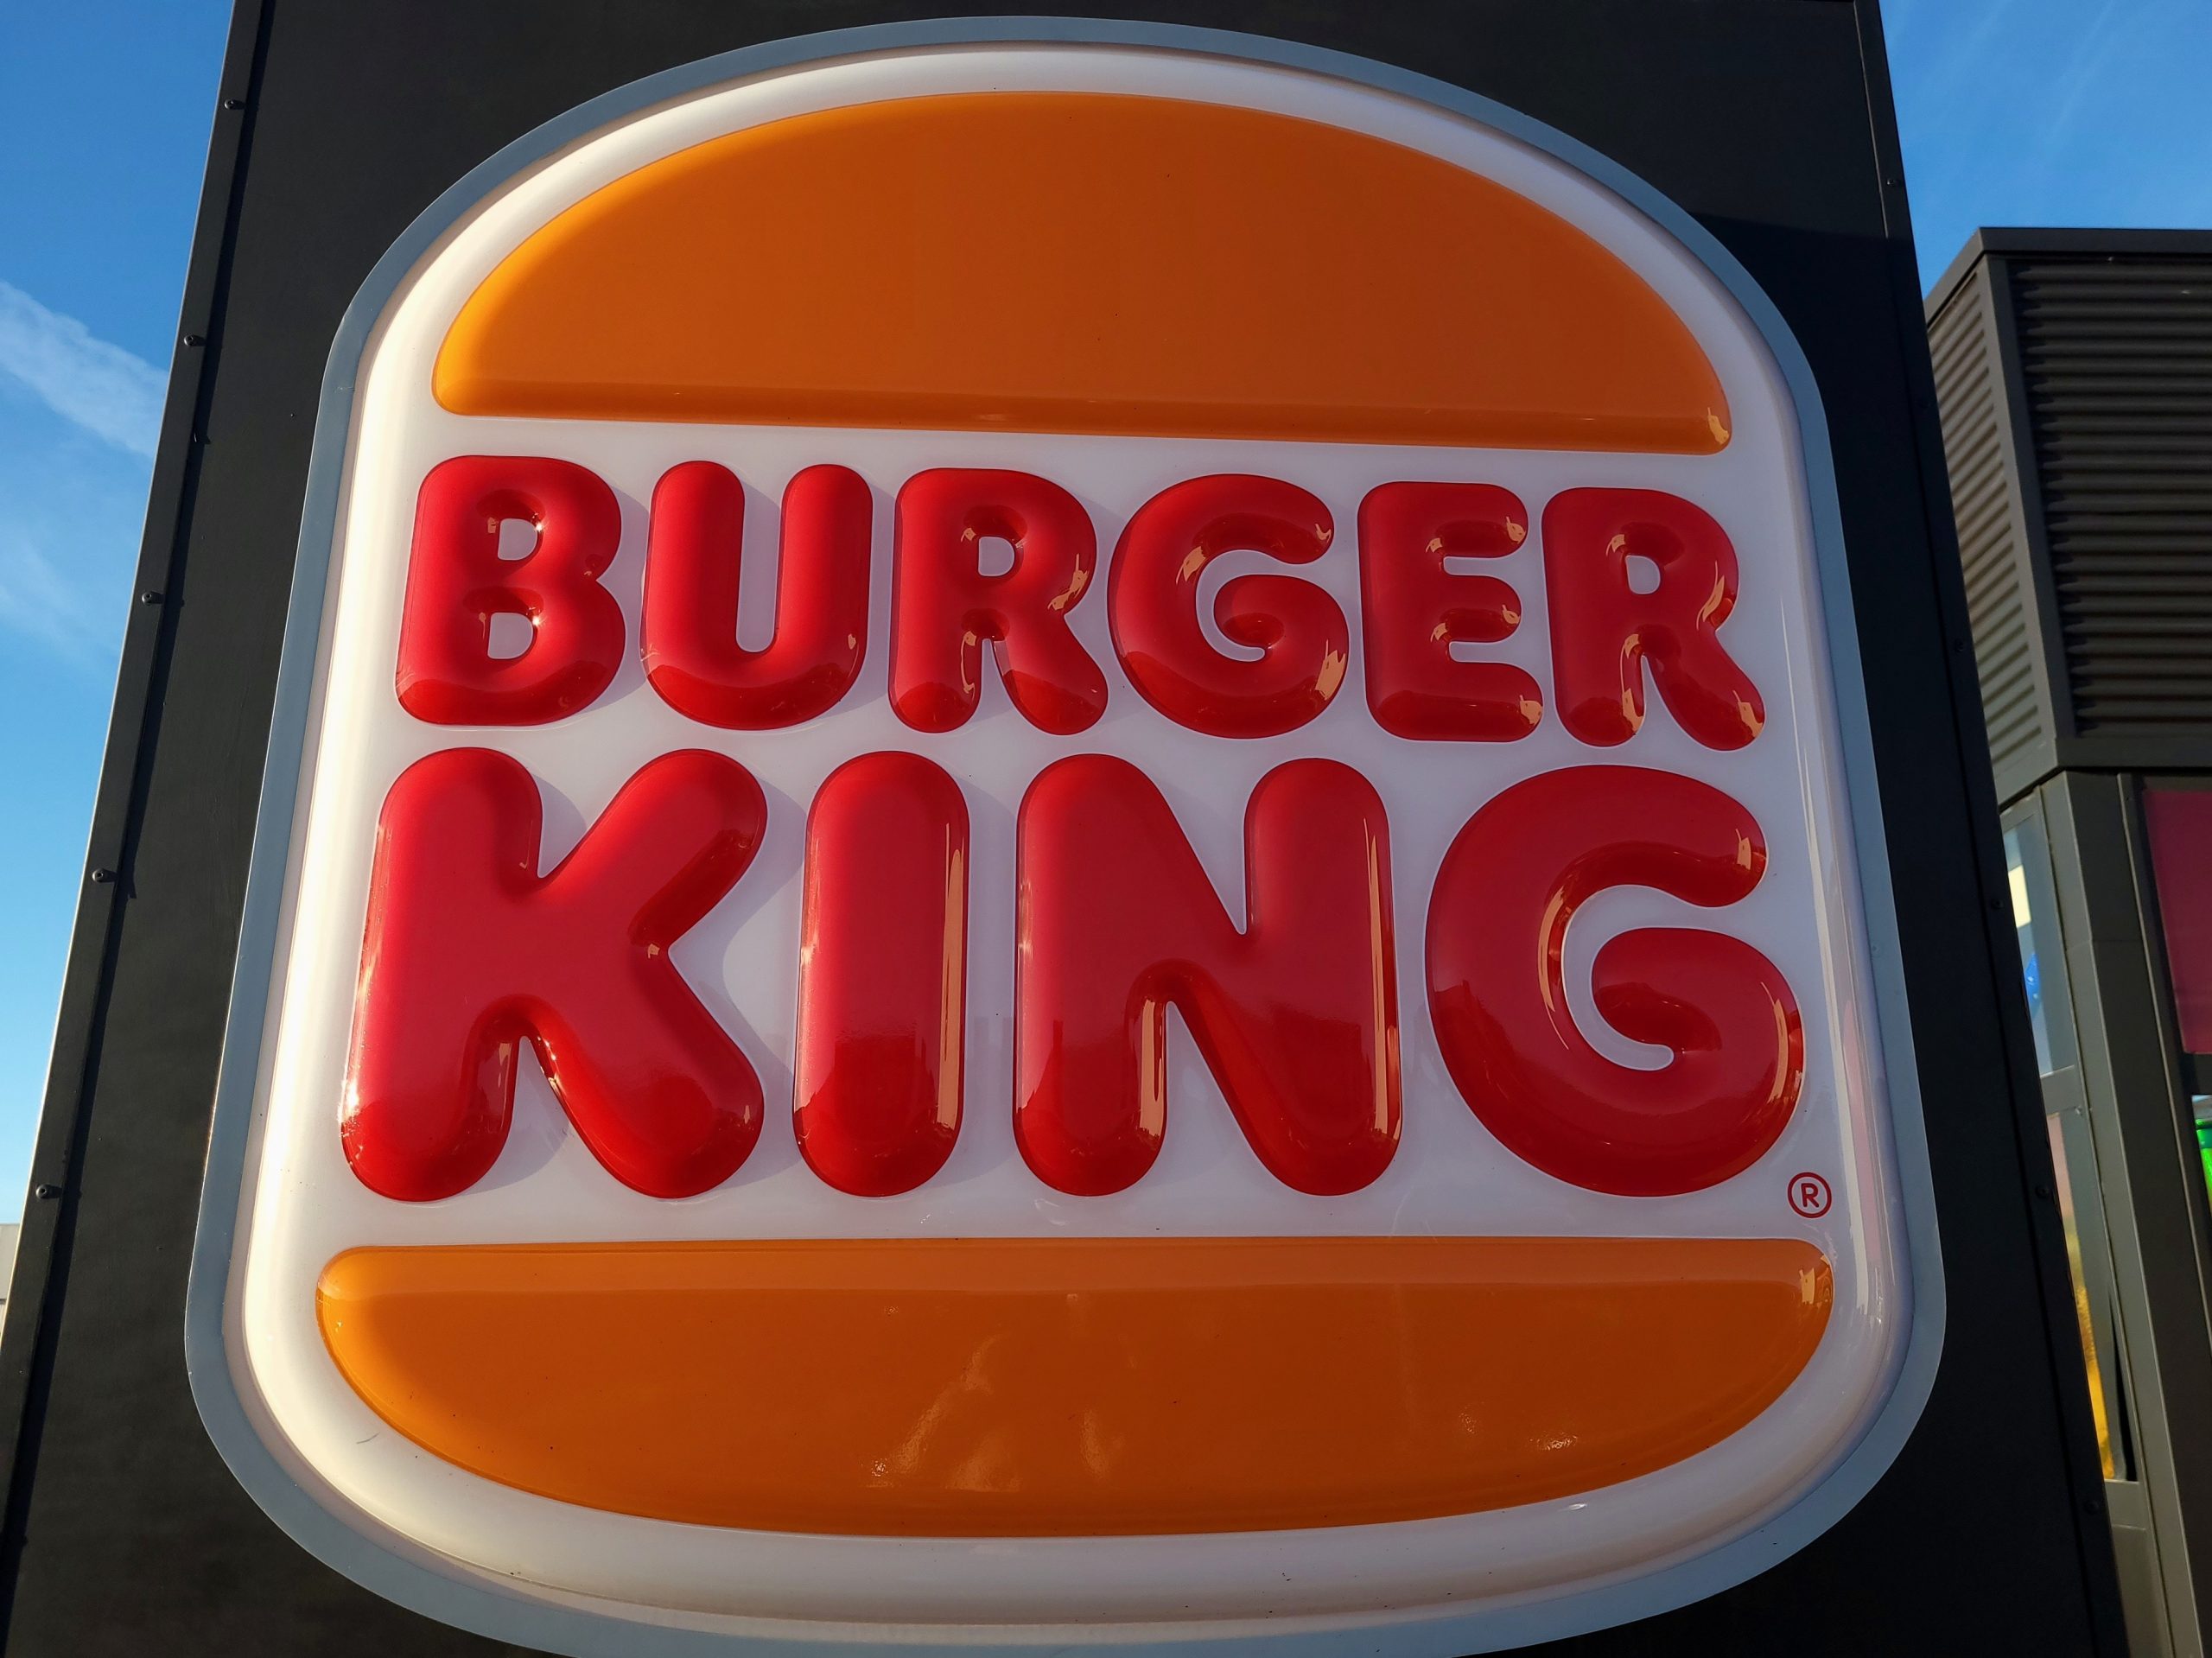 O Segredo da Longevidade nos Relacionamentos - Uma reflexão a partir da campanha do Burger King